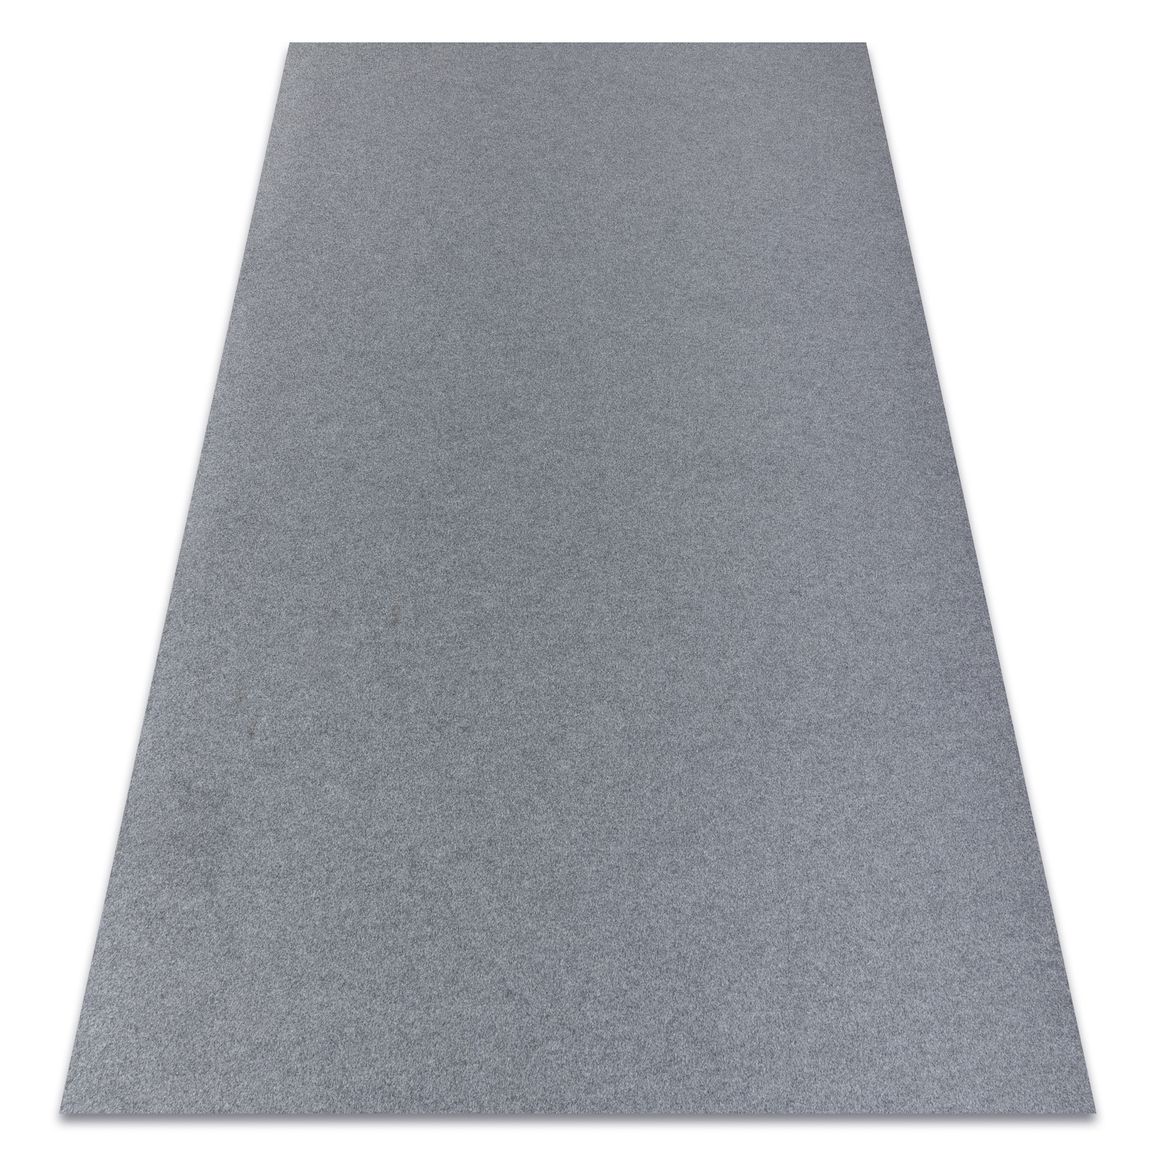 Protišmykový koberec RUMBA 1809 melanž, sivý